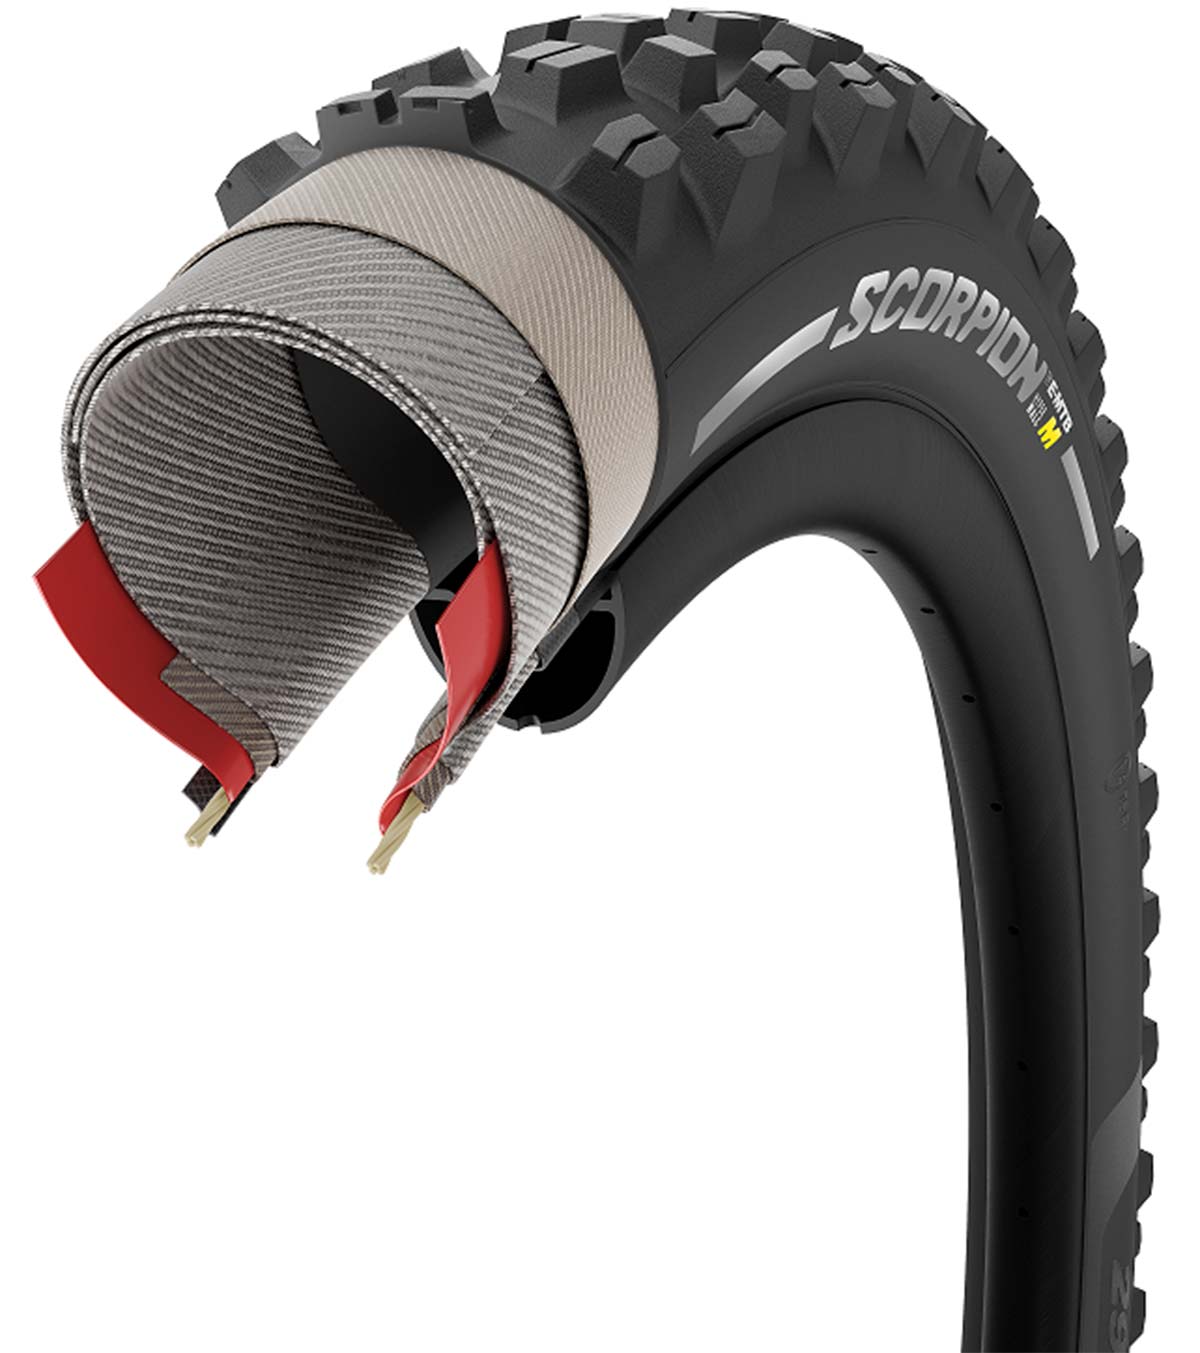 En TodoMountainBike: Pirelli actualiza su gama de neumáticos Scorpion Enduro y e-MTB